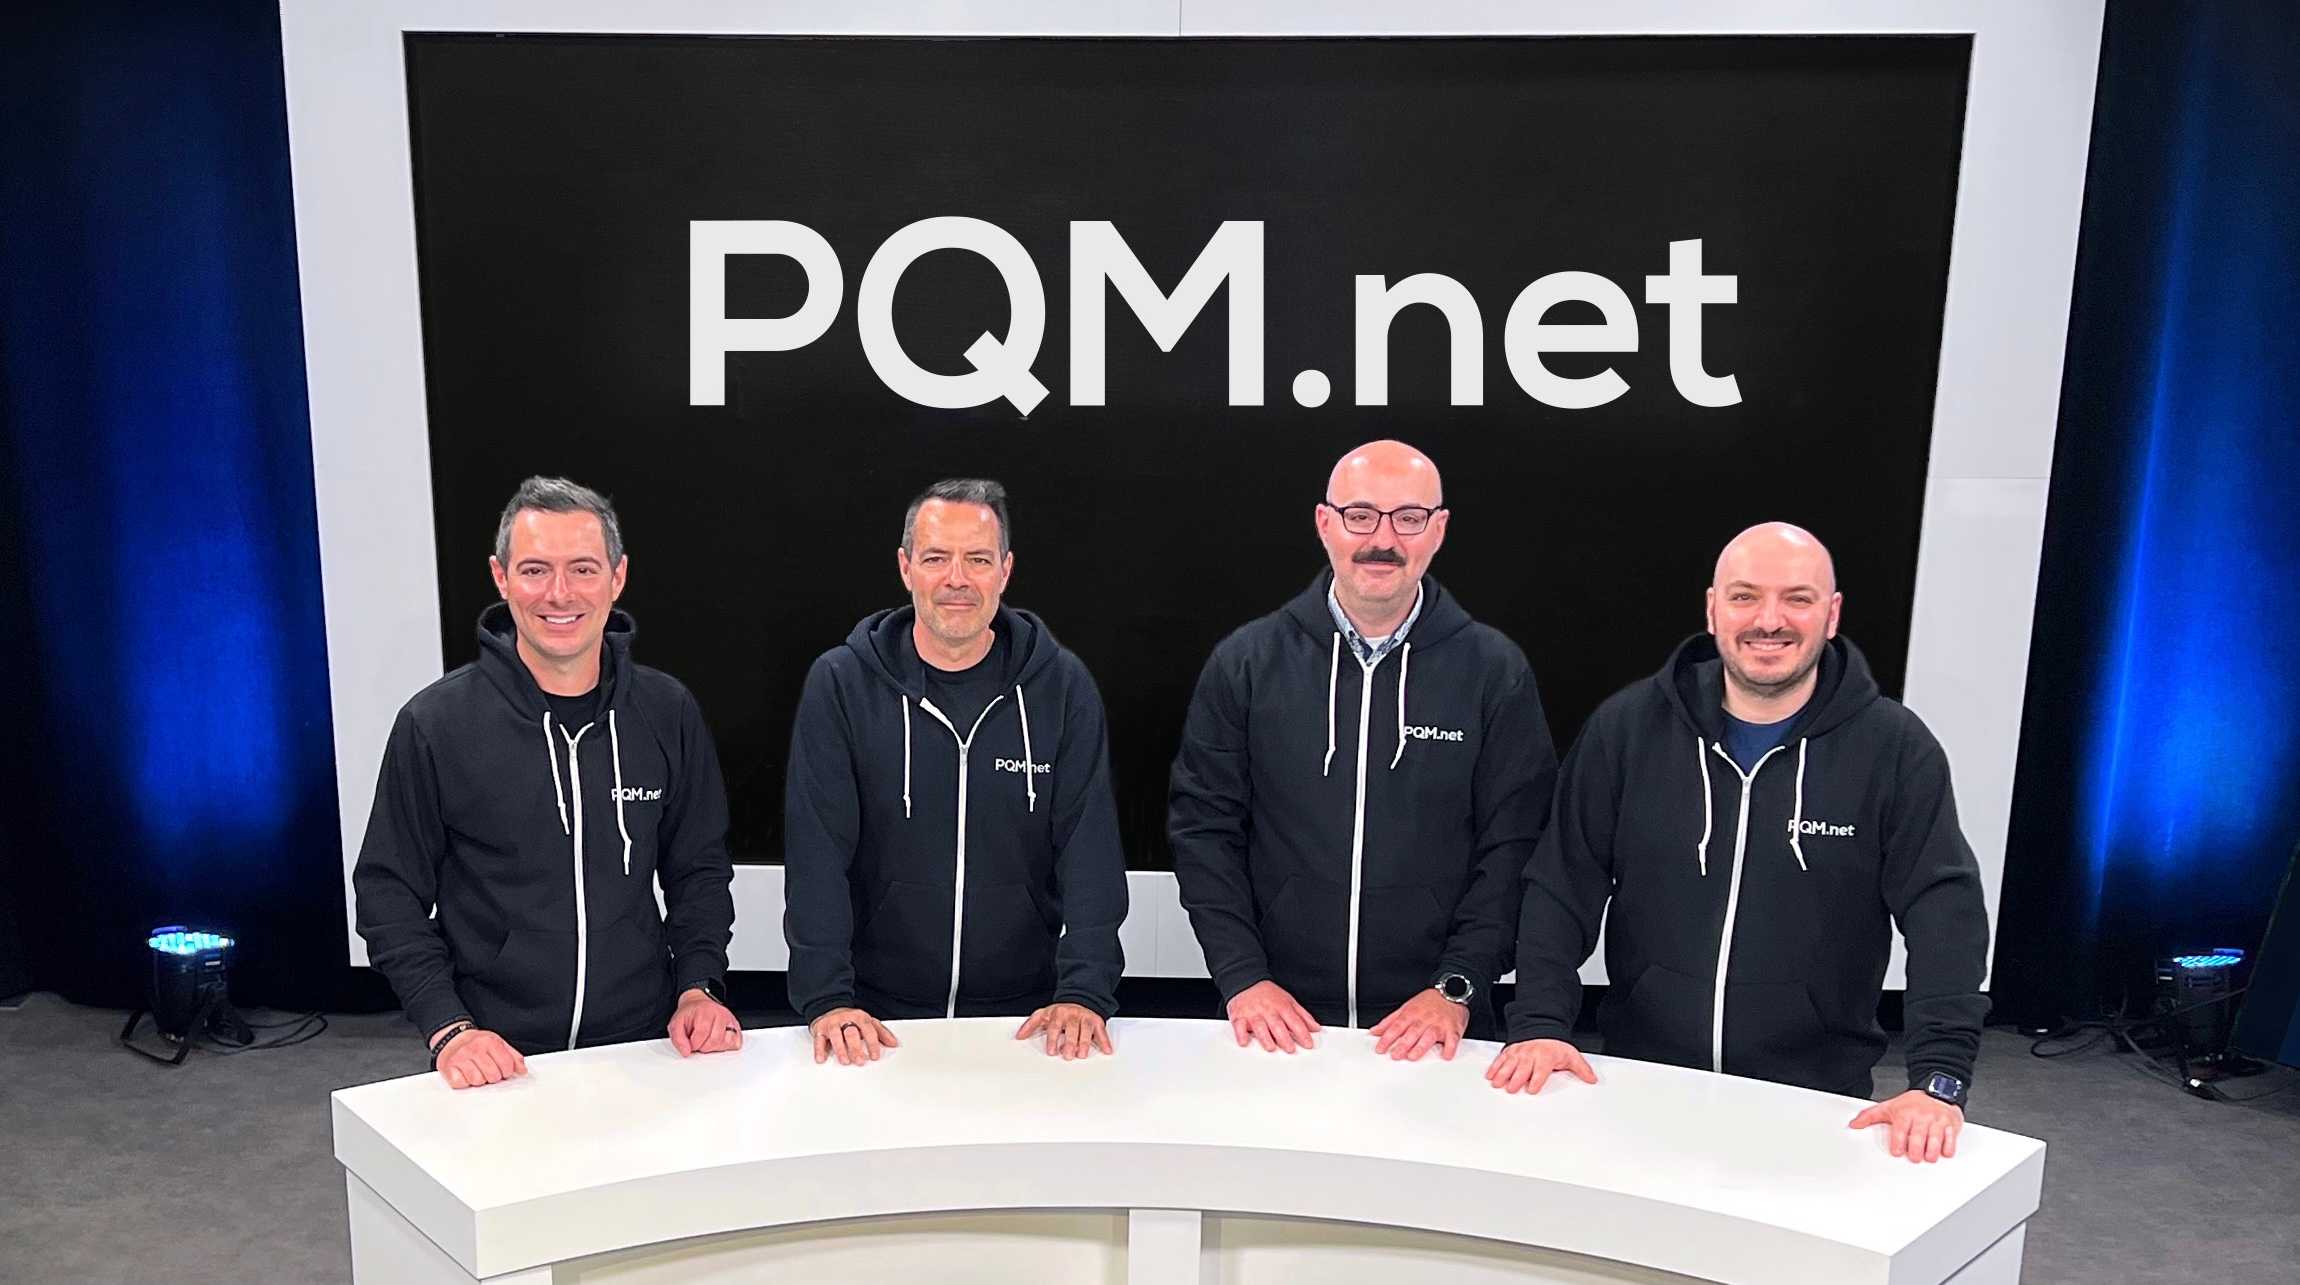 Les frères Landry lors de l'acquisition officielle de PQM.net depuis leur père.